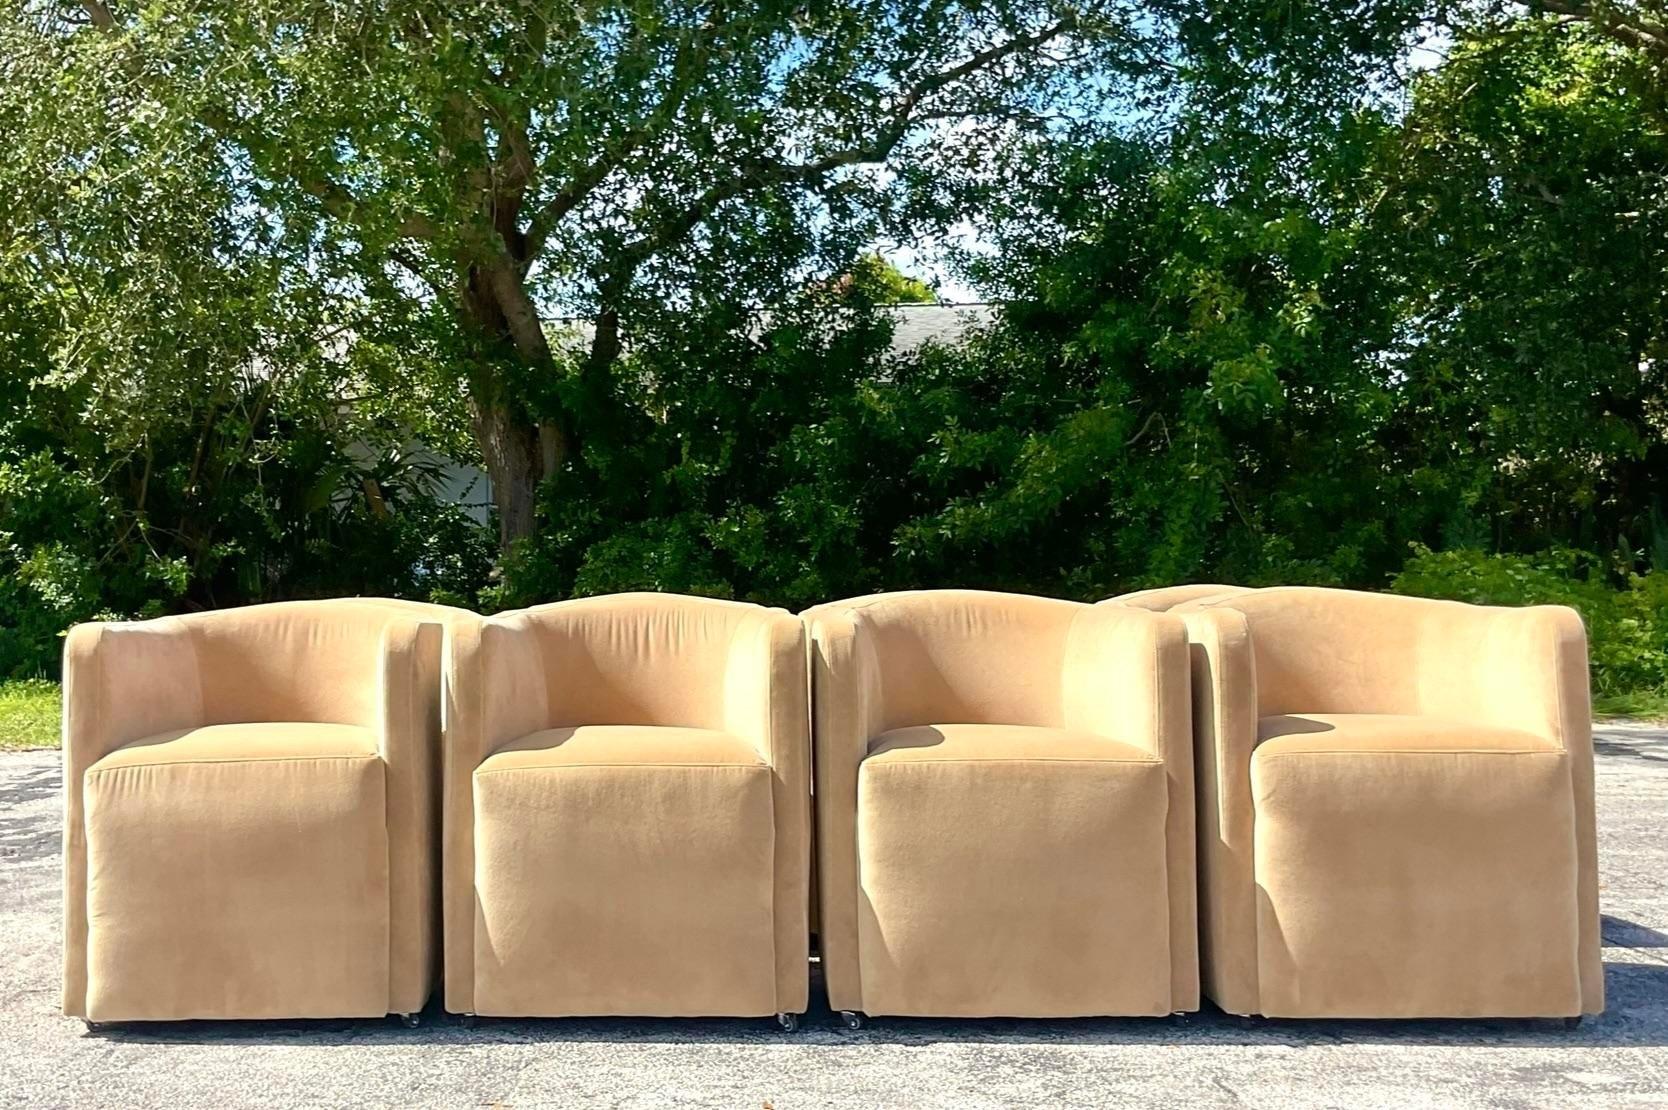 Verbessern Sie Ihr Essenserlebnis mit einem Hauch von moderner amerikanischer Eleganz! Dieses Set aus acht modernen Ultra-Wildleder-Esszimmerstühlen auf Rollen kombiniert Komfort und Vielseitigkeit mit schlichter Raffinesse. Diese Stühle eignen sich